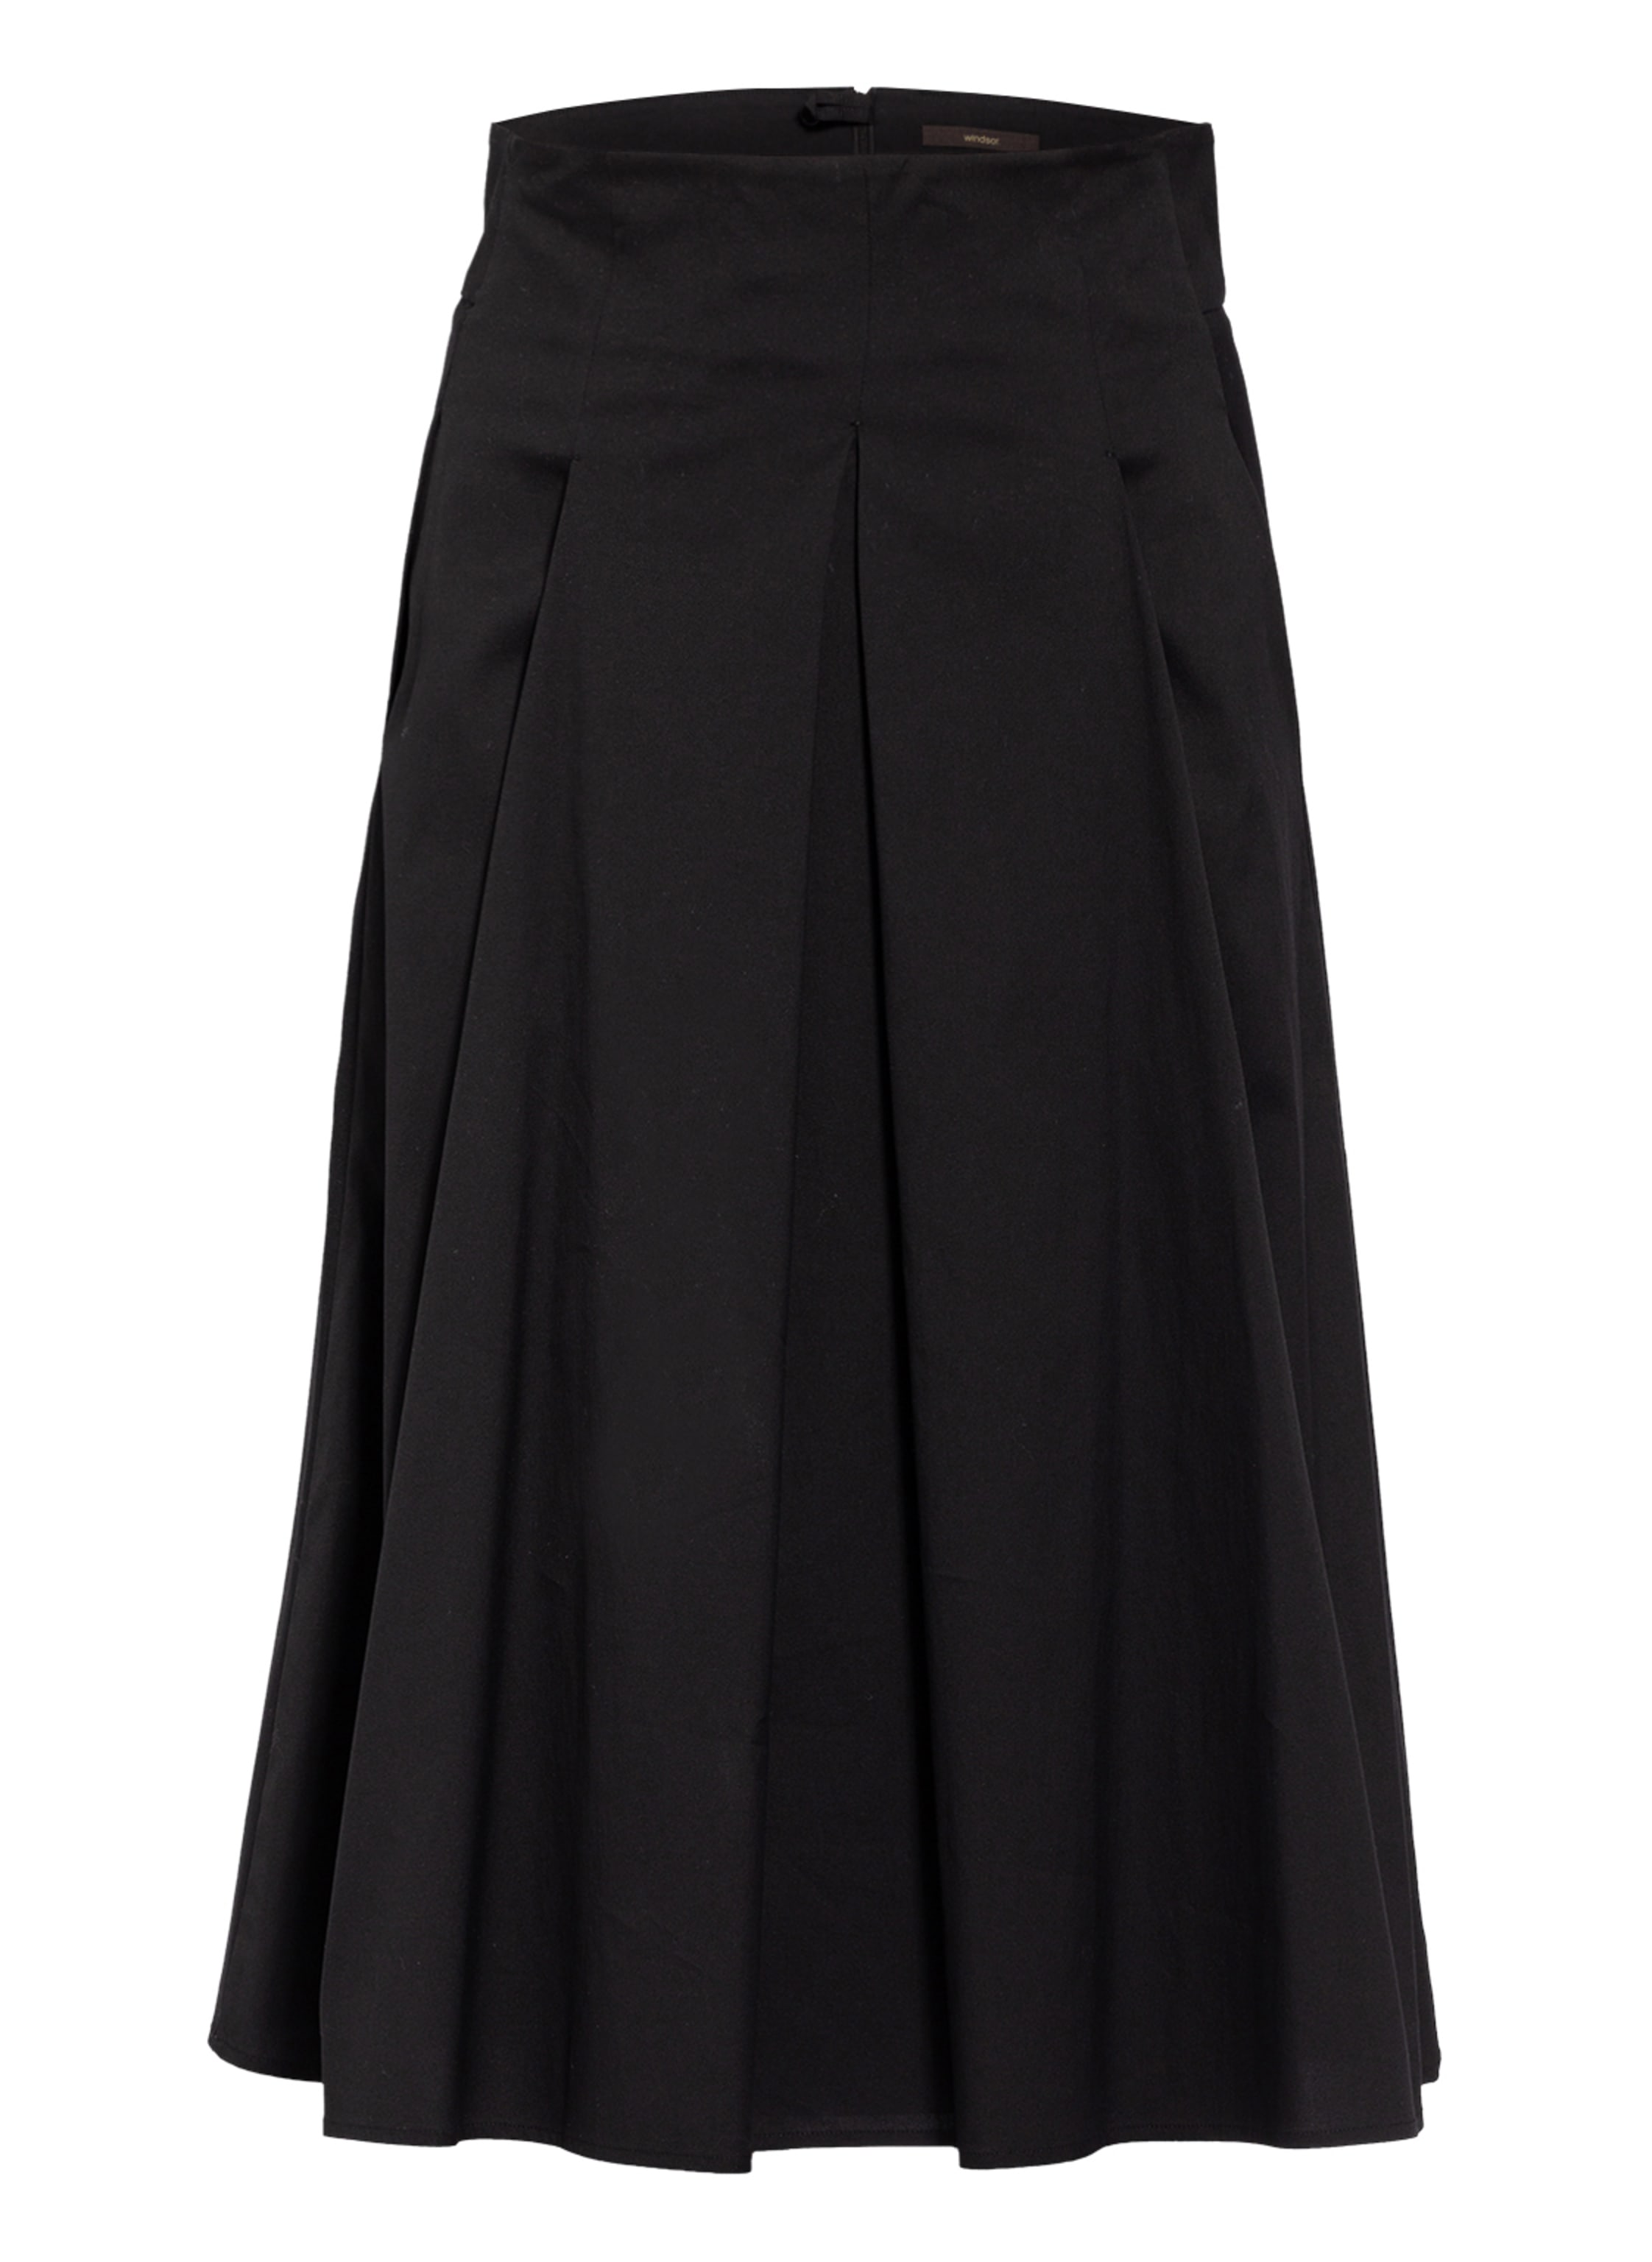 windsor. Pleated skirt in black | Breuninger